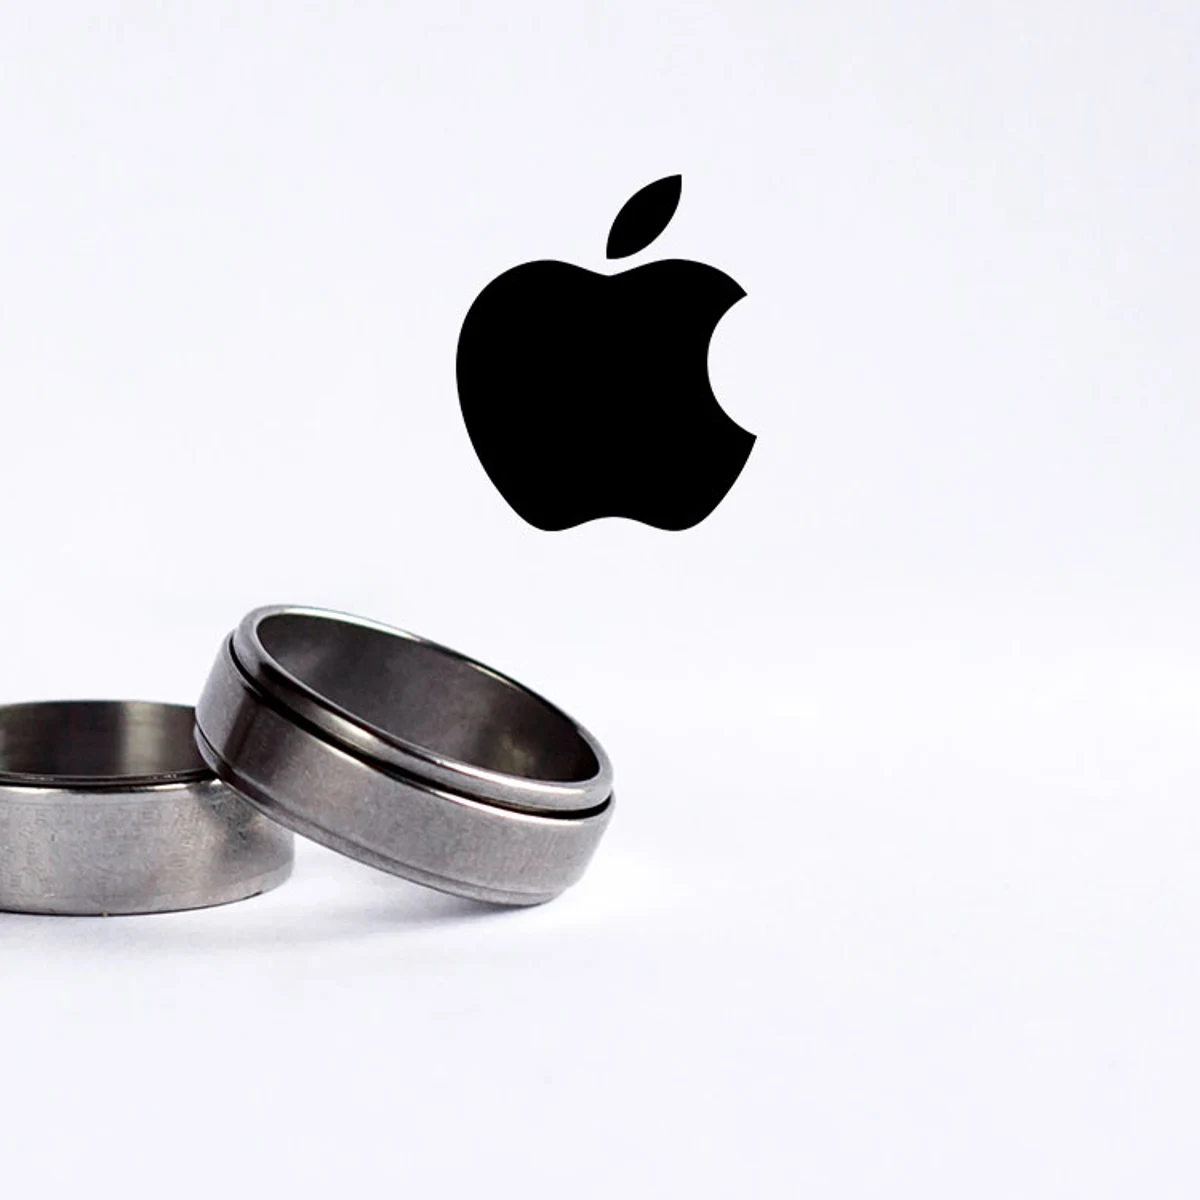 Si el anillo inteligente de Apple es así, quiero uno ahora mismo - Digital  Trends Español